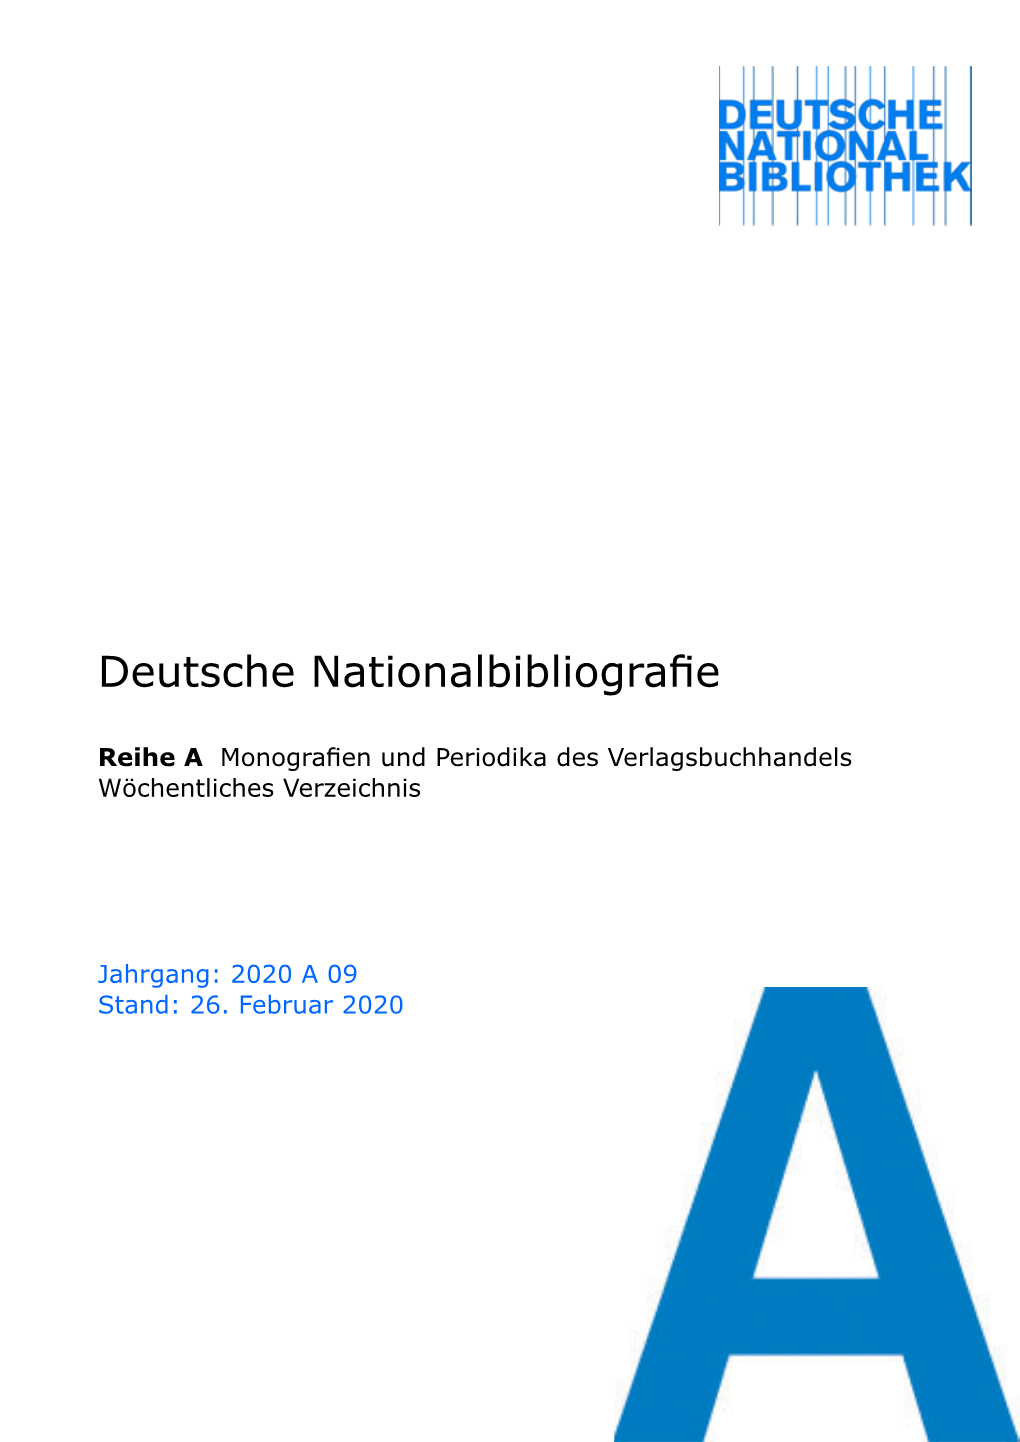 Deutsche Nationalbibliografie 2020 a 09